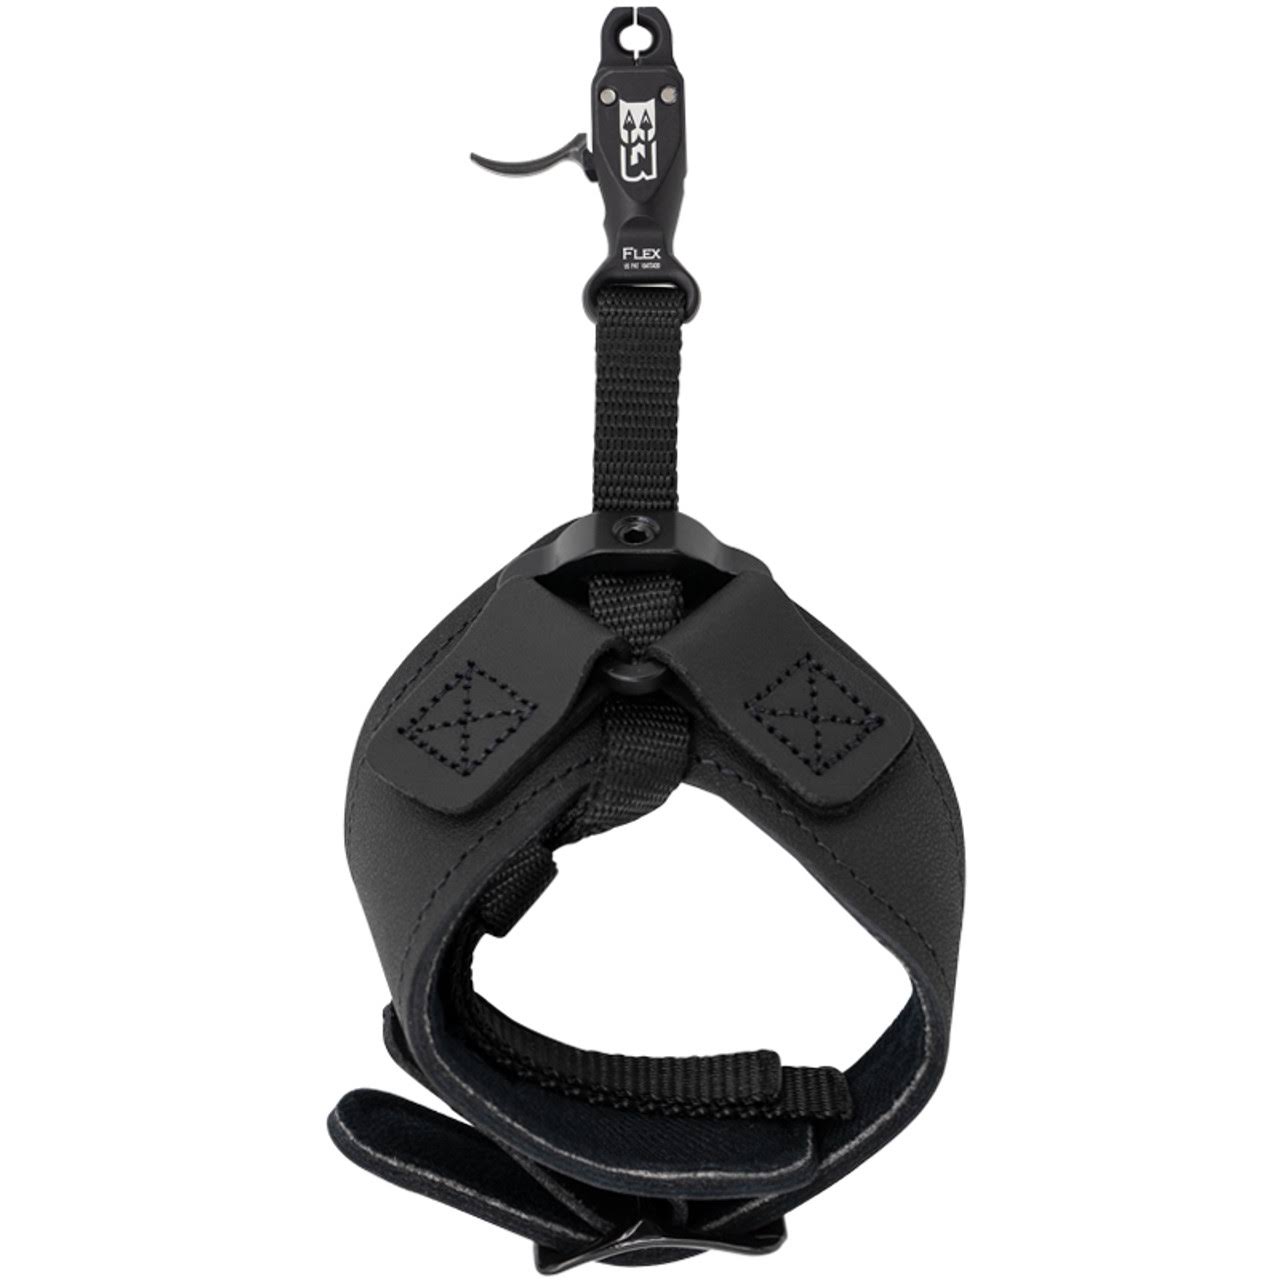 B3 Archery Rival - Flex Connector- Double-Caliper Release (Black)